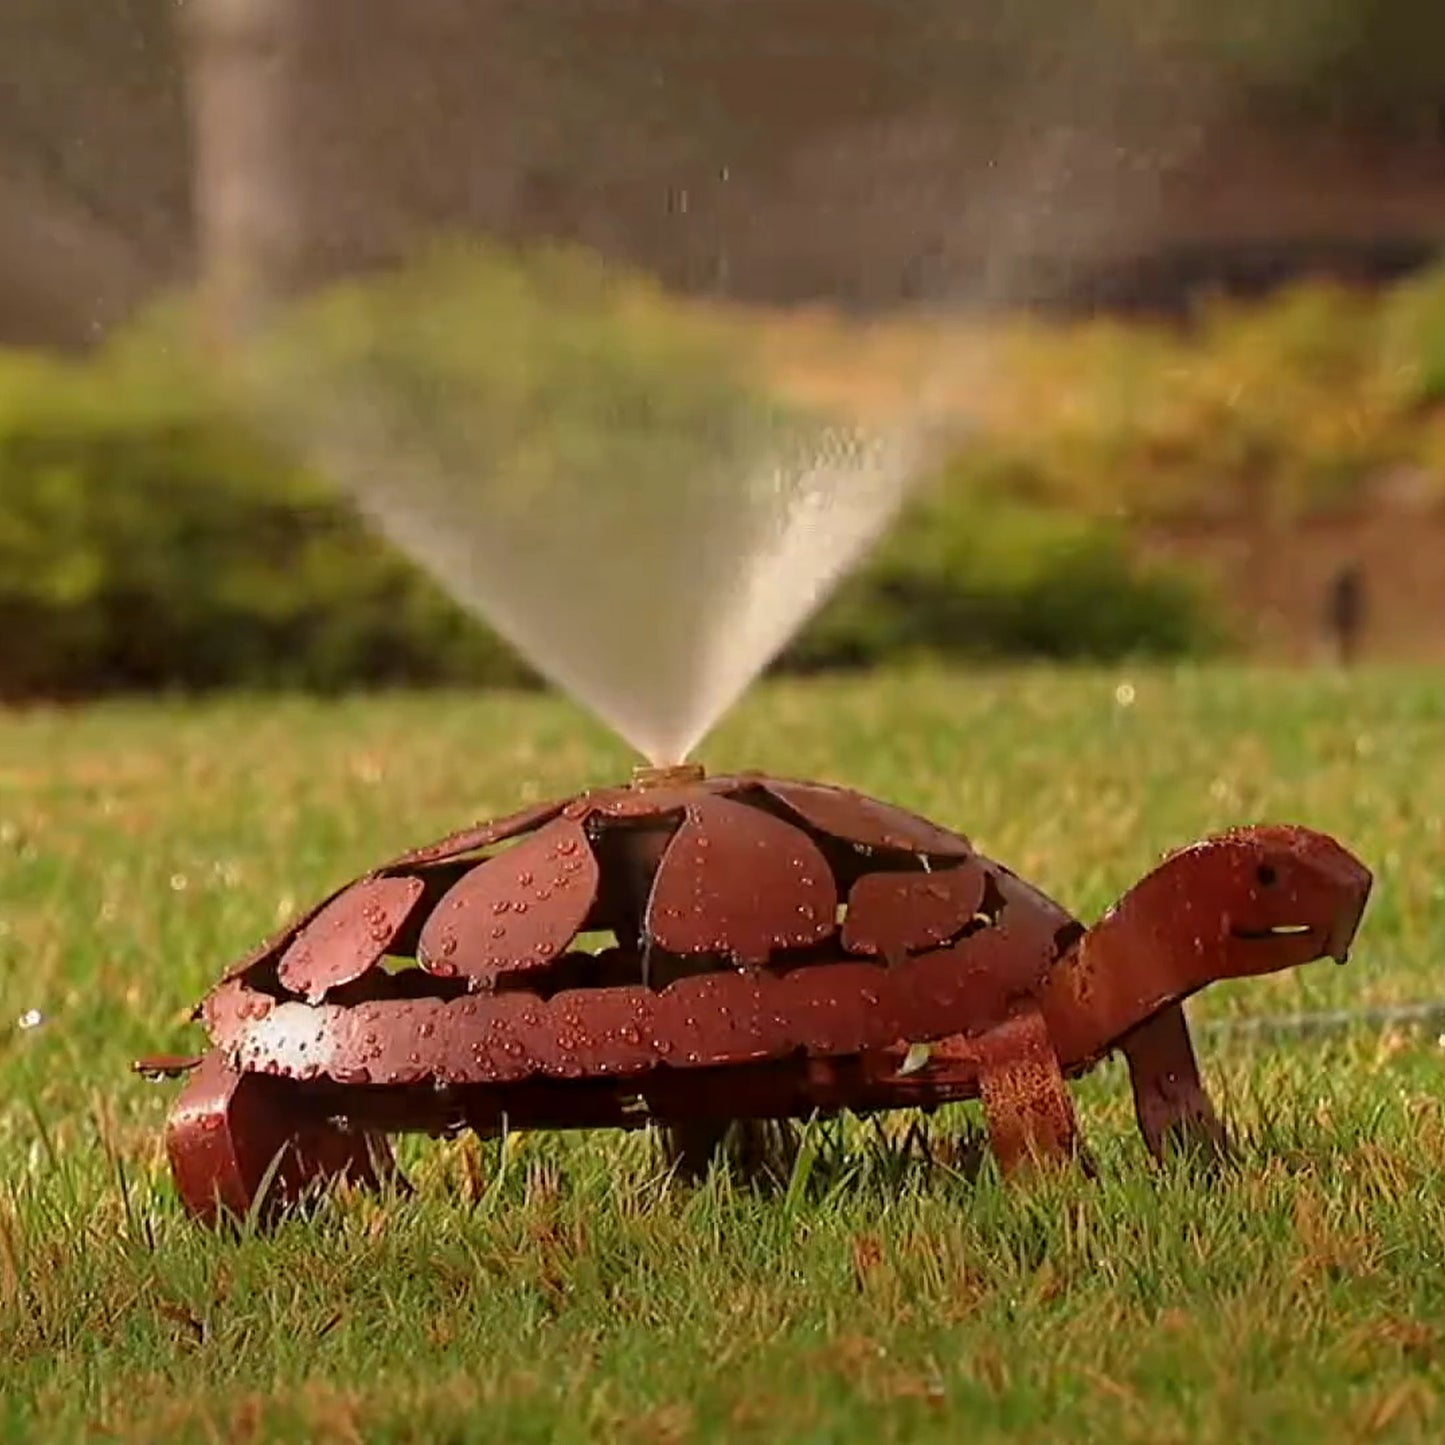 Rustic Turtle Sprinkler